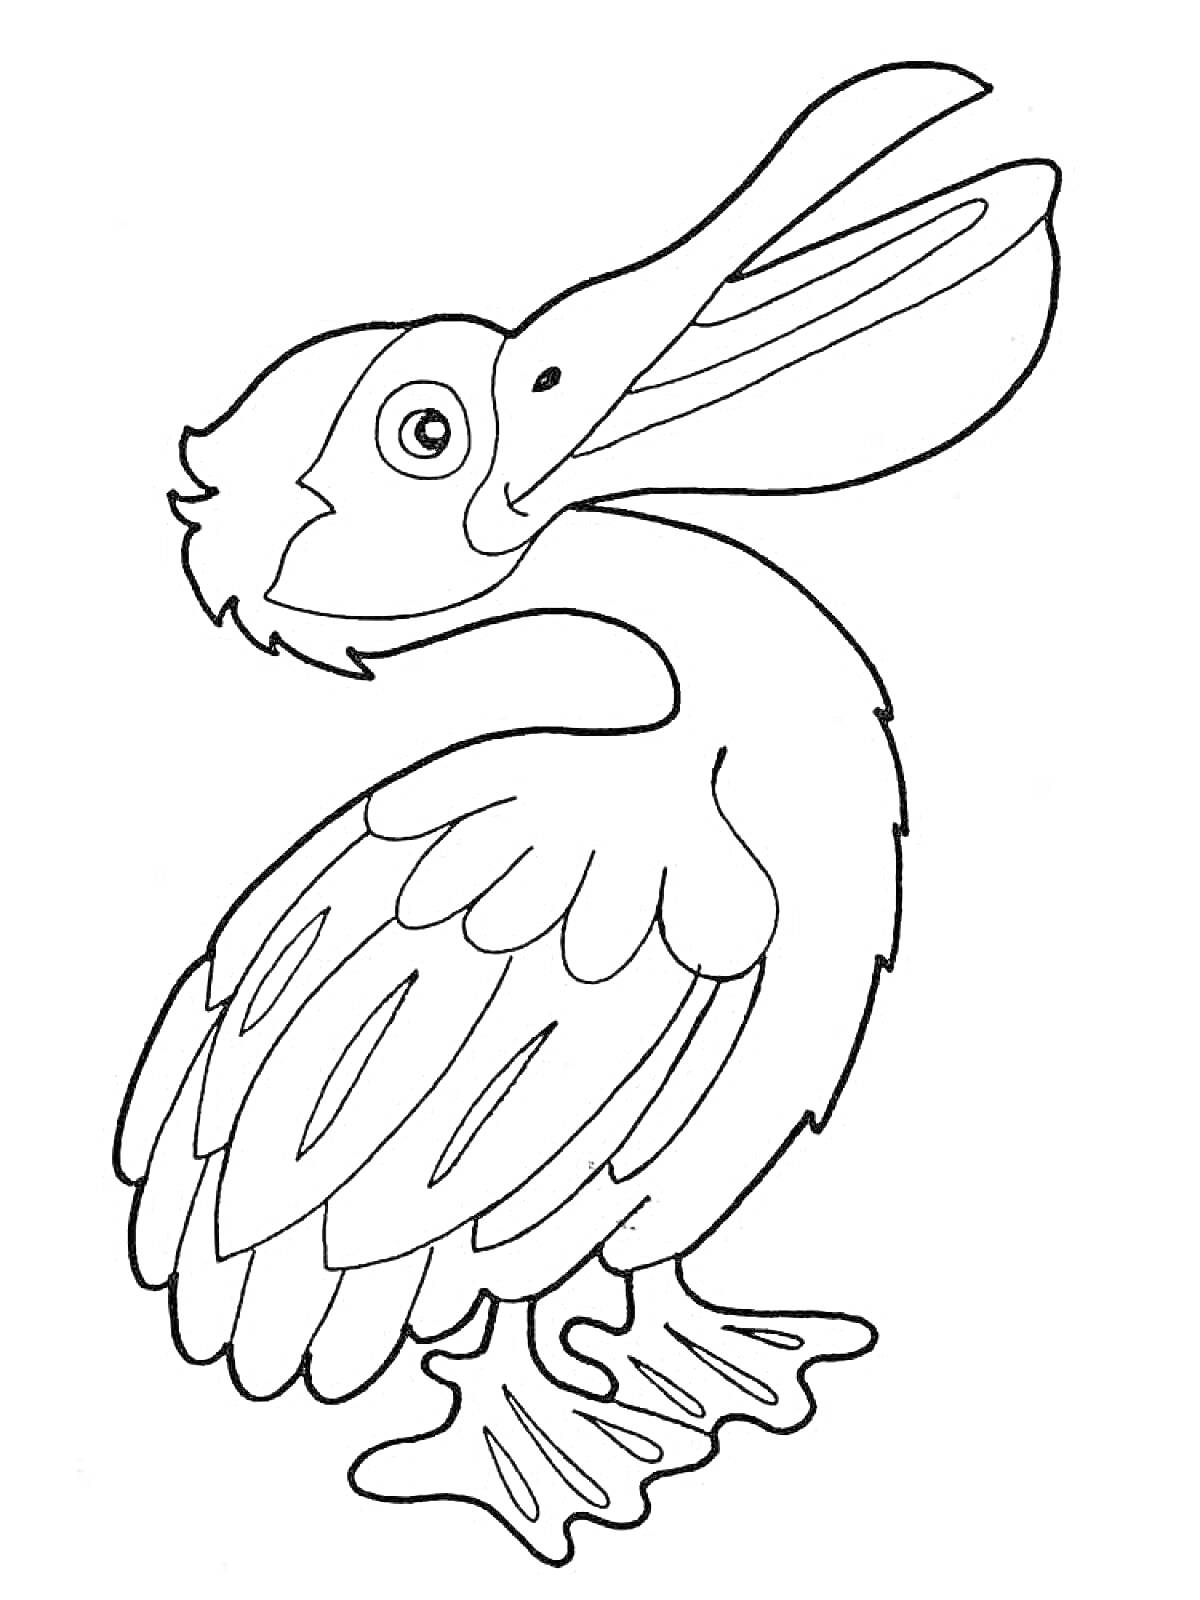 Пеликан, стоящий на земле с раскрытым клювом